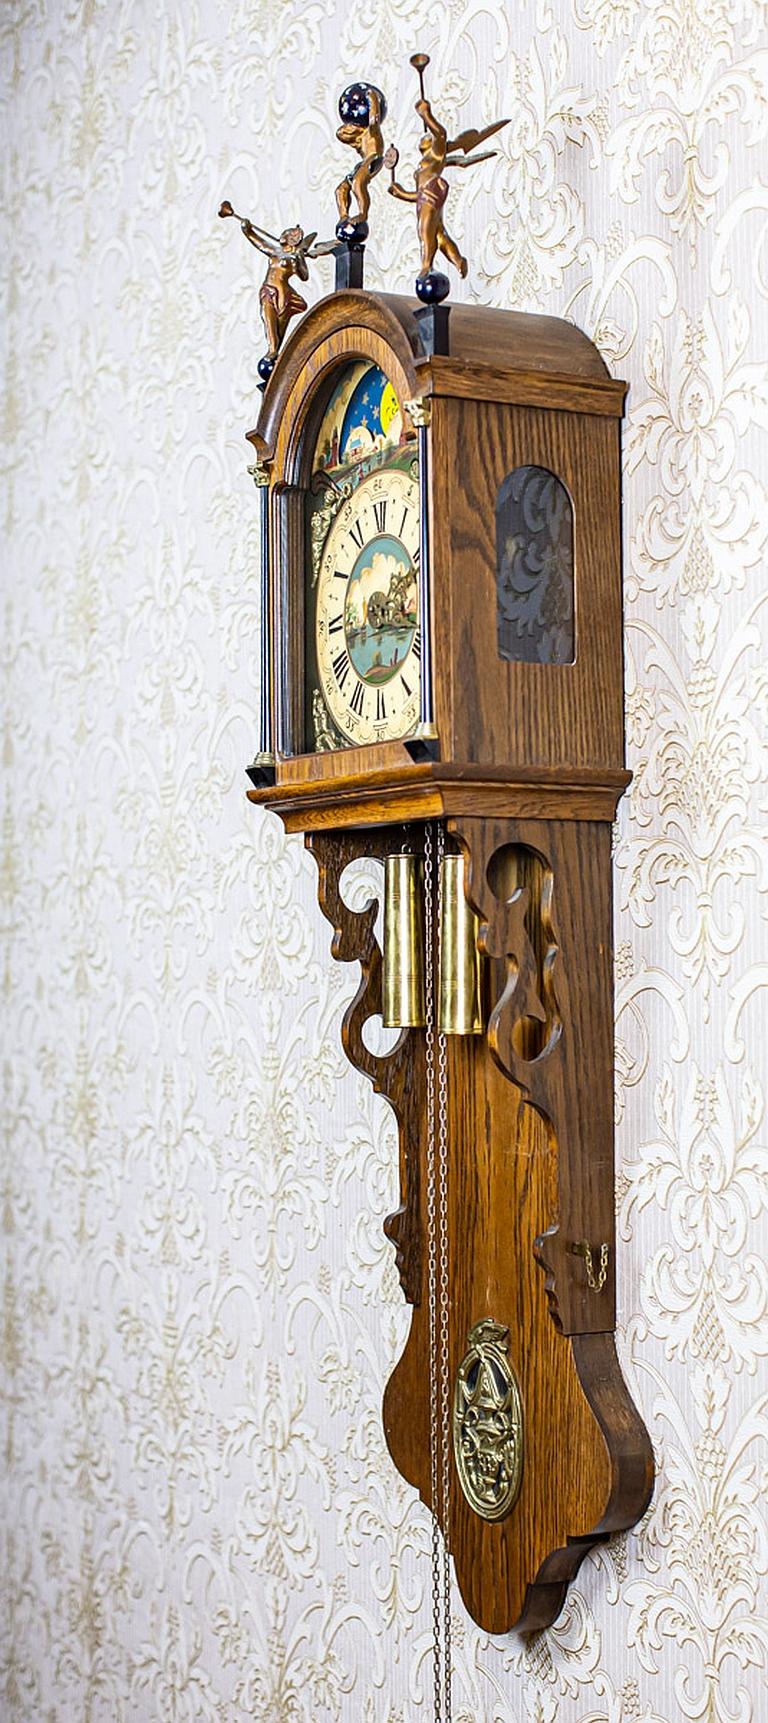 20th Century Dutch Wall Clock Stylized as Staarta in Brown Oak Case 3